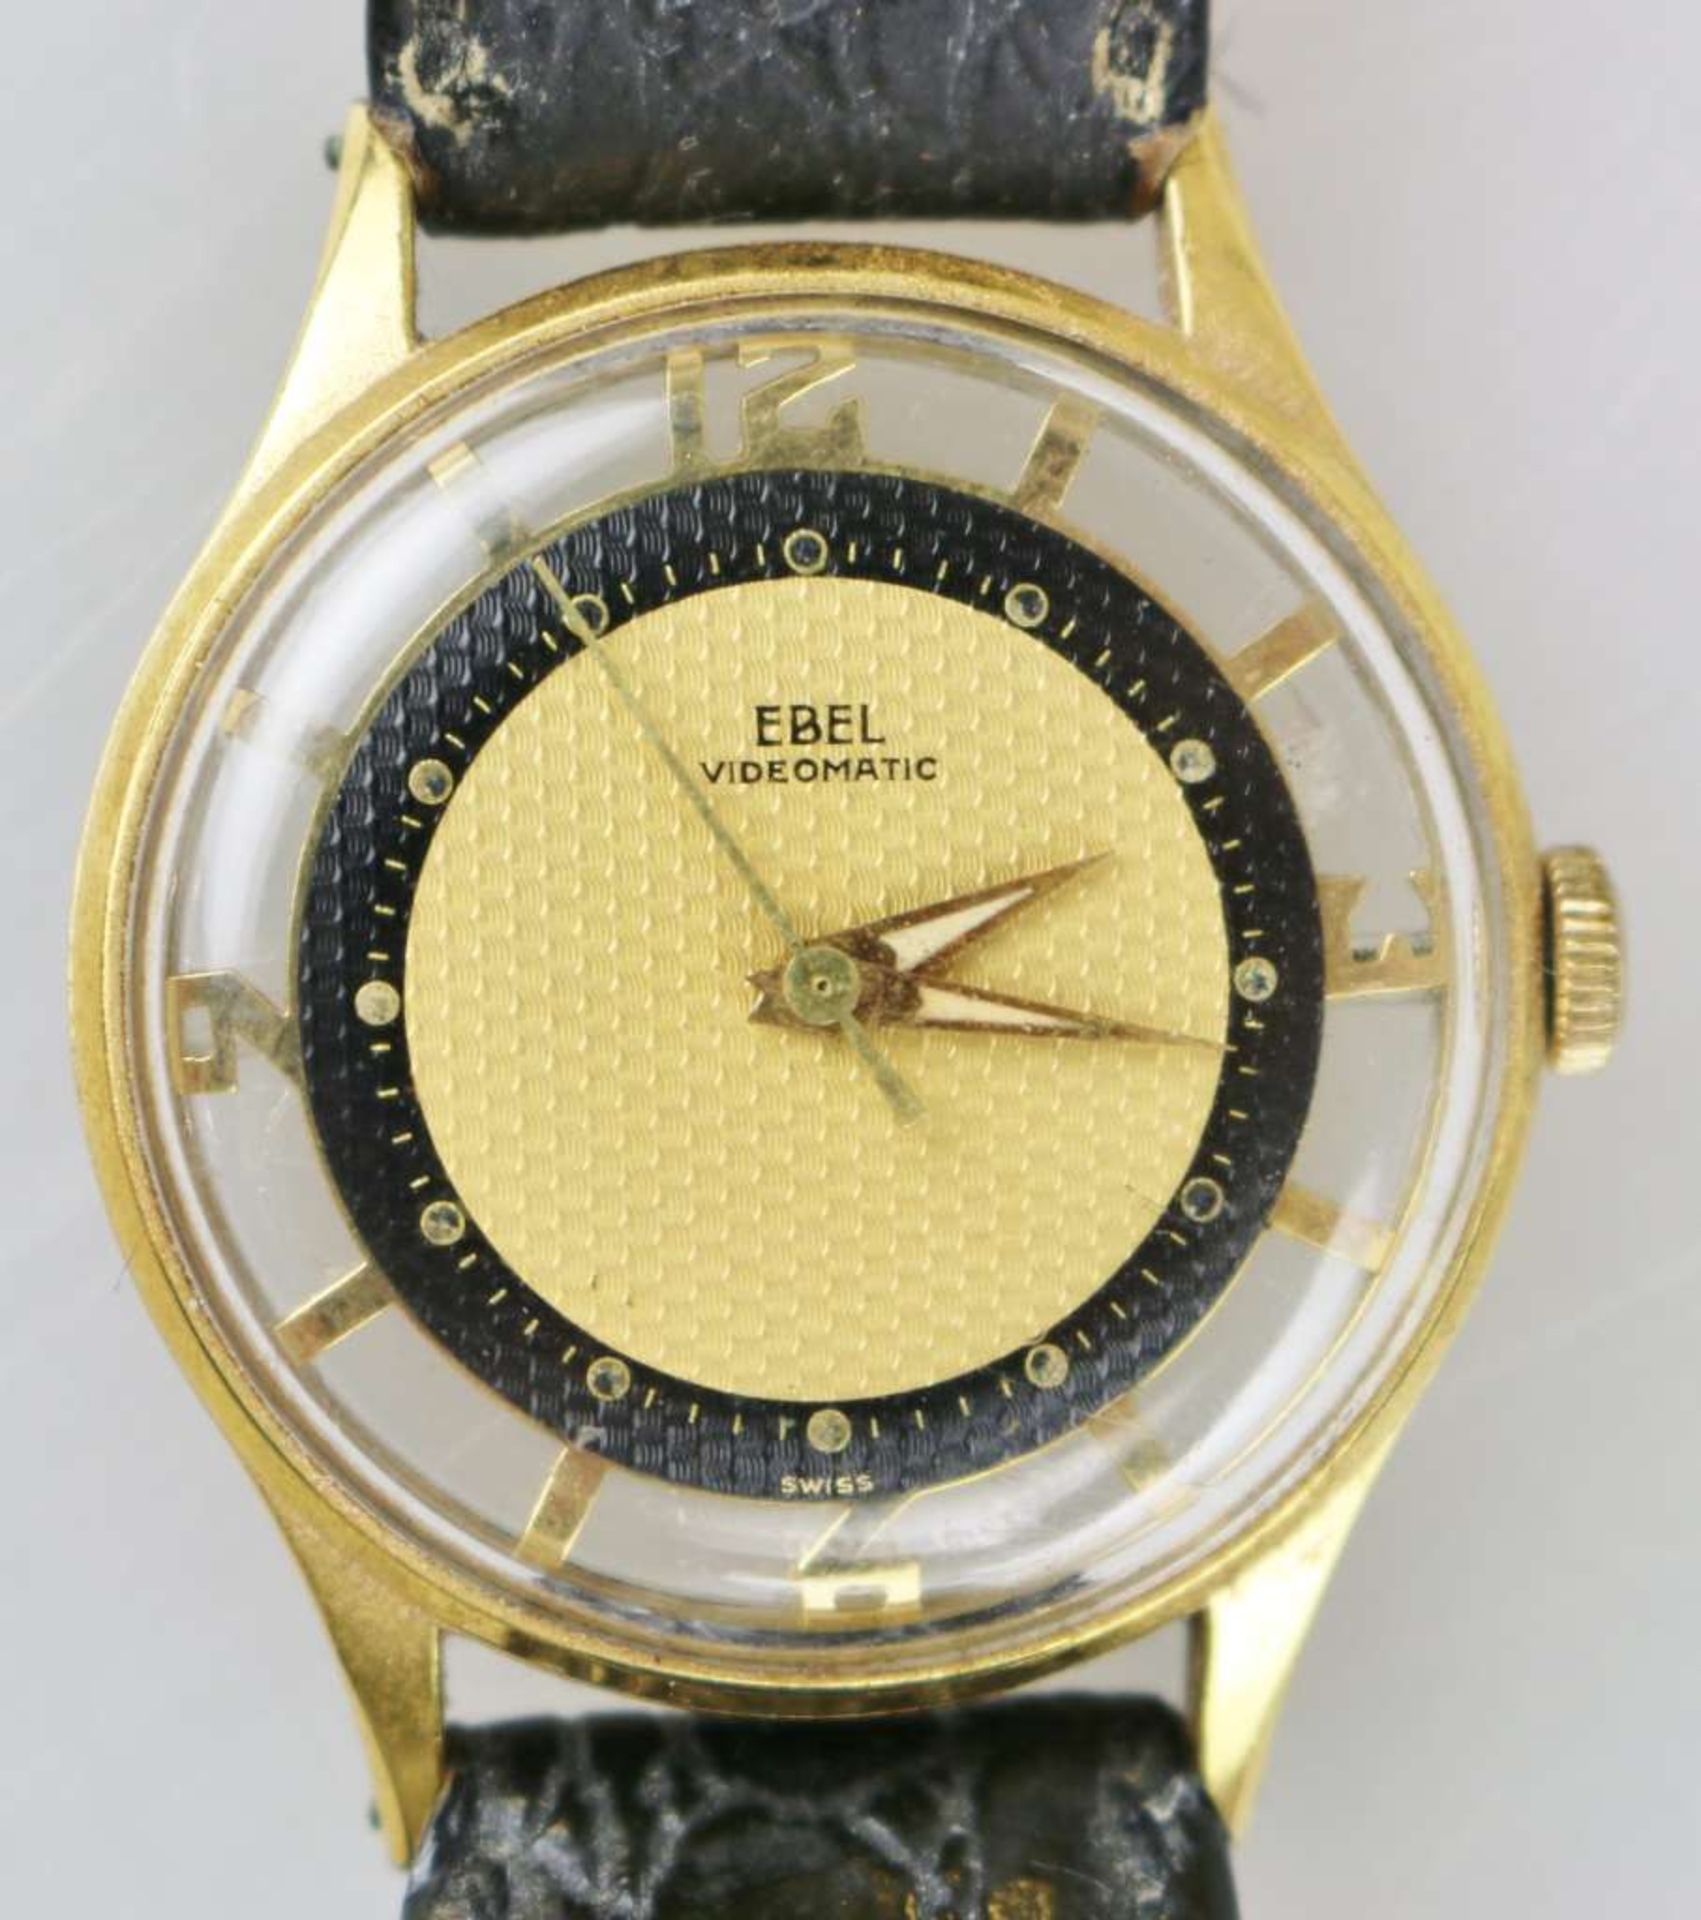 Ebel Videomatic, Vintage Skelettuhr, Schweiz um 1950, Automatic Uhrwerk, 17 Jewels, Plexiglas, - Bild 2 aus 4